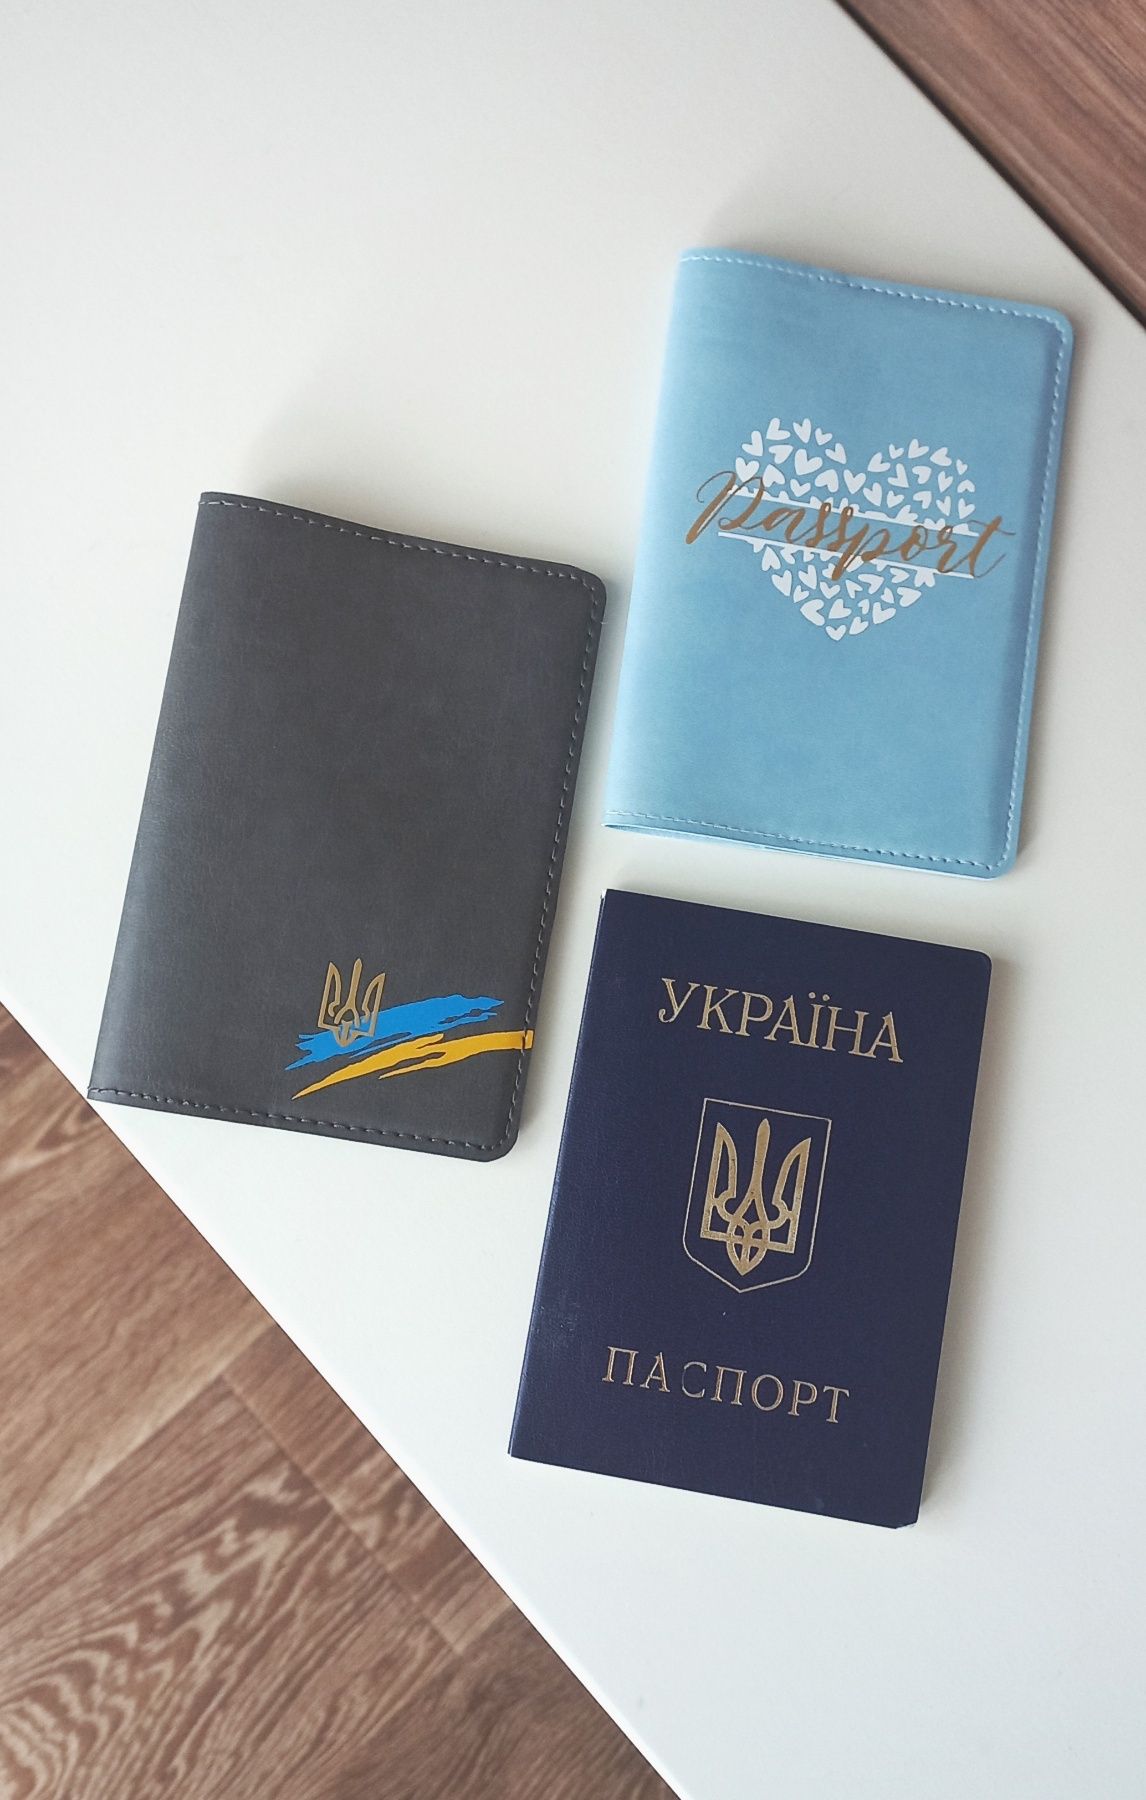 Обкладинка на паспорт _ обложка,  обложки на документы